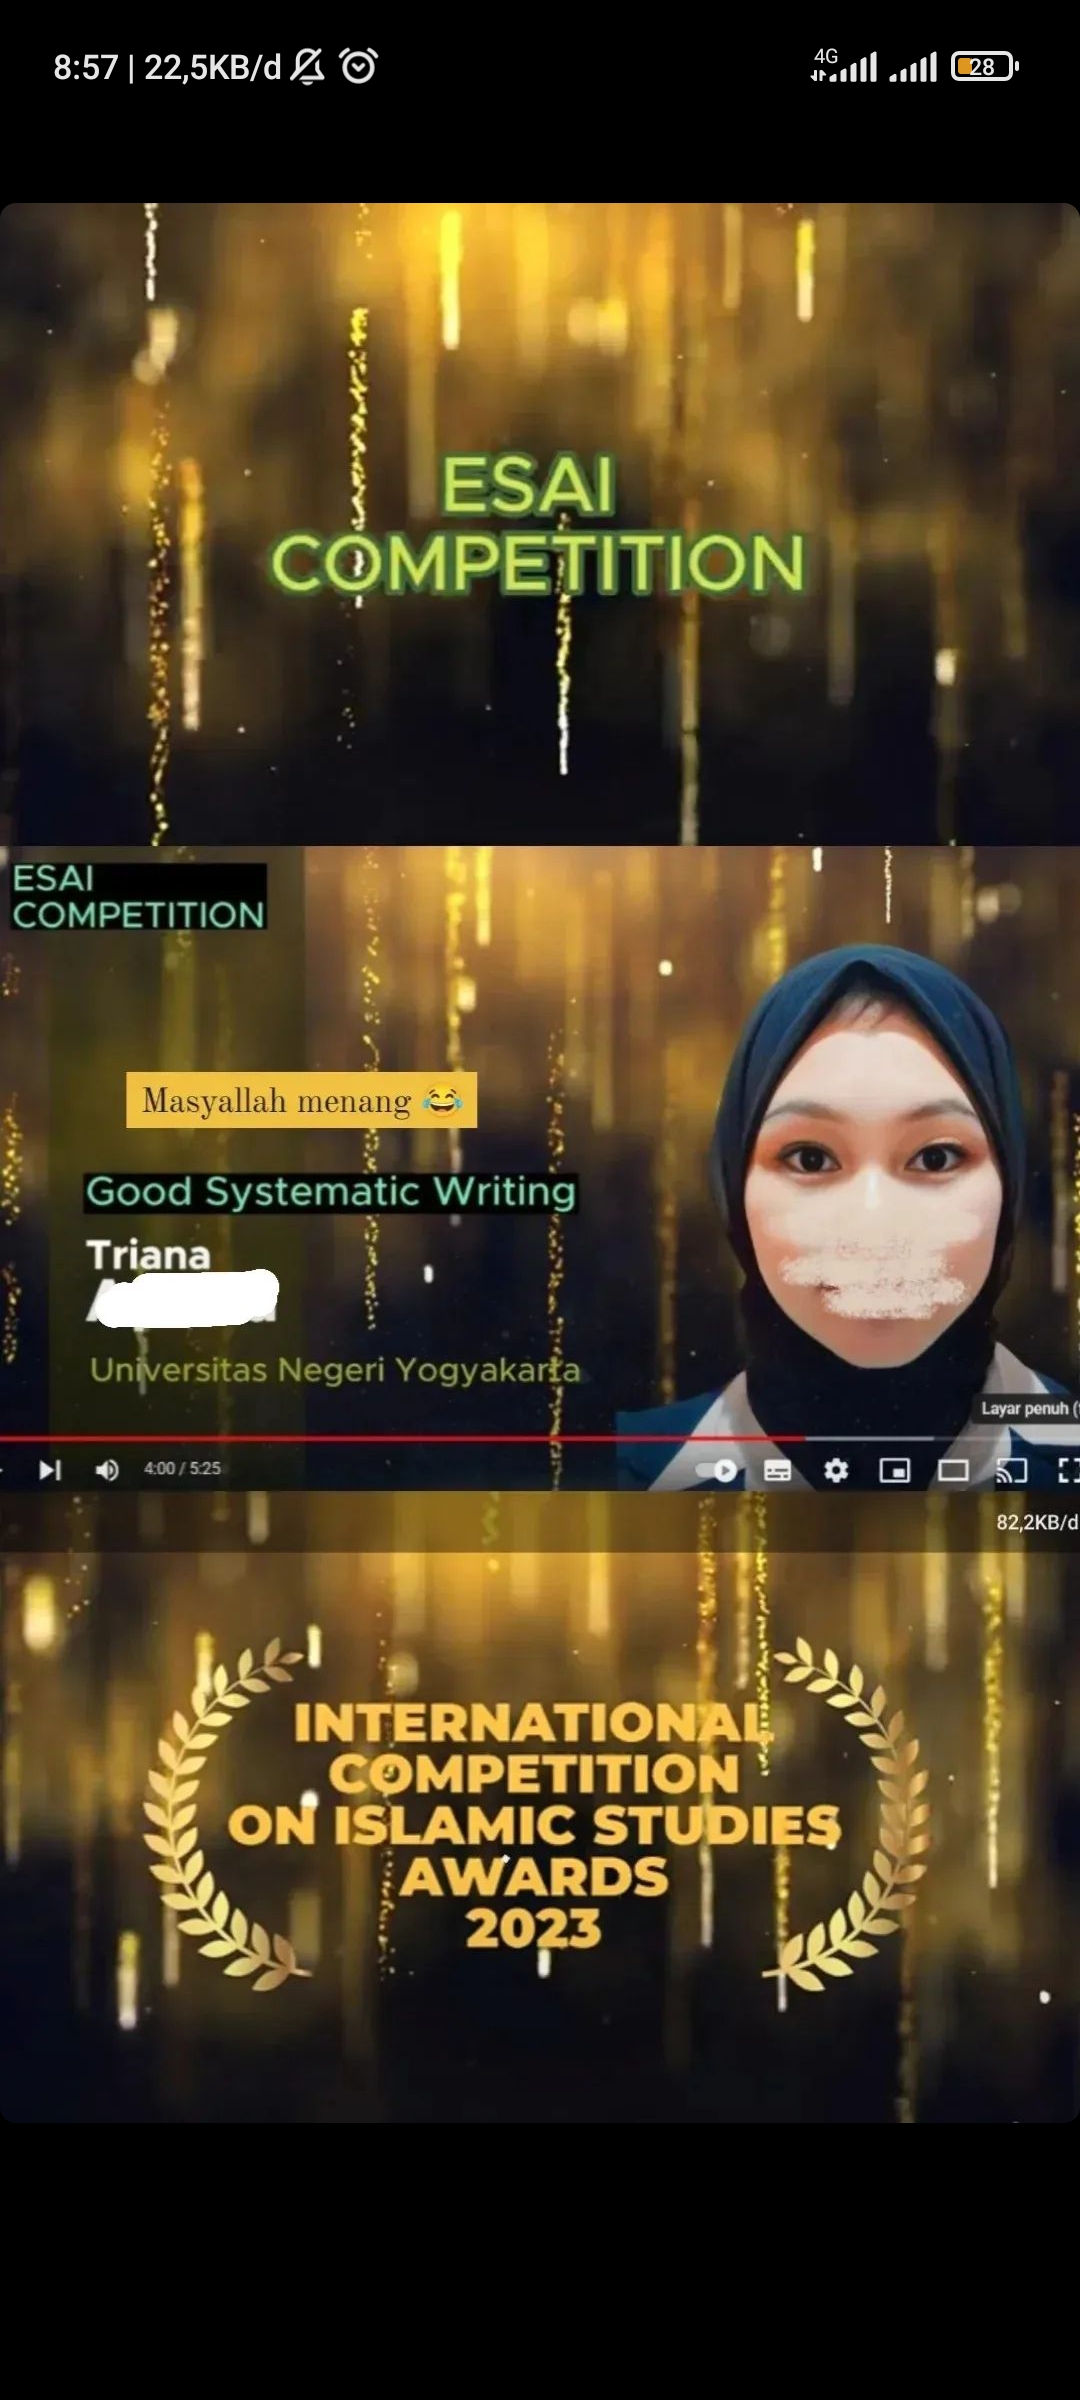 Foto Kompetisi internasional pembelajaran islam